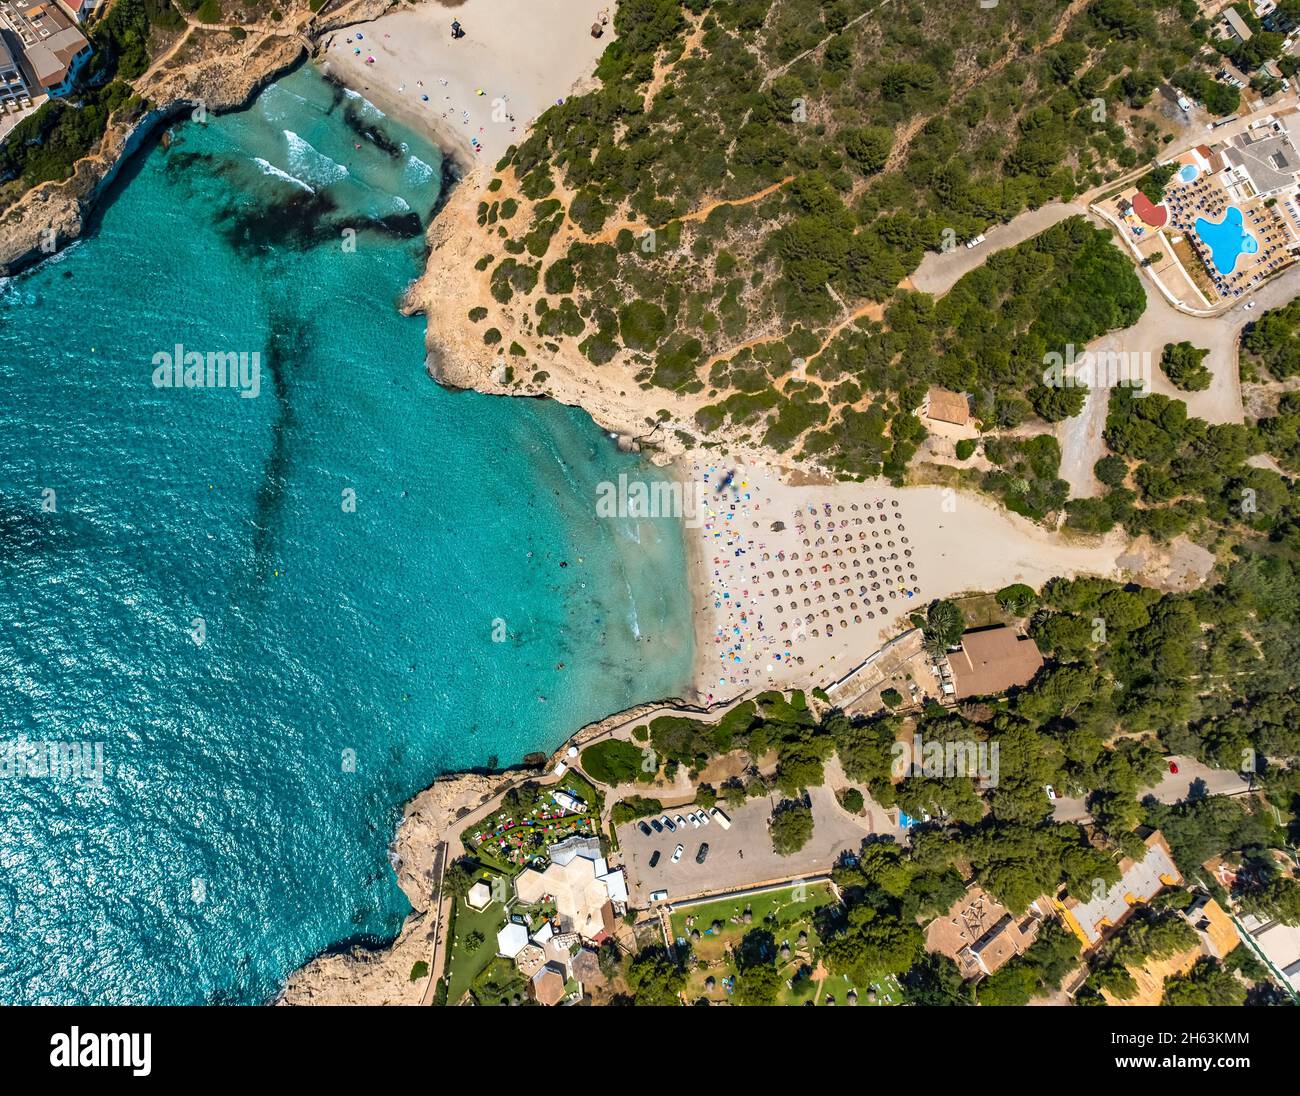 vista aérea,playa de cala domingos,manacor,mallorca,islas baleares,españa Foto de stock